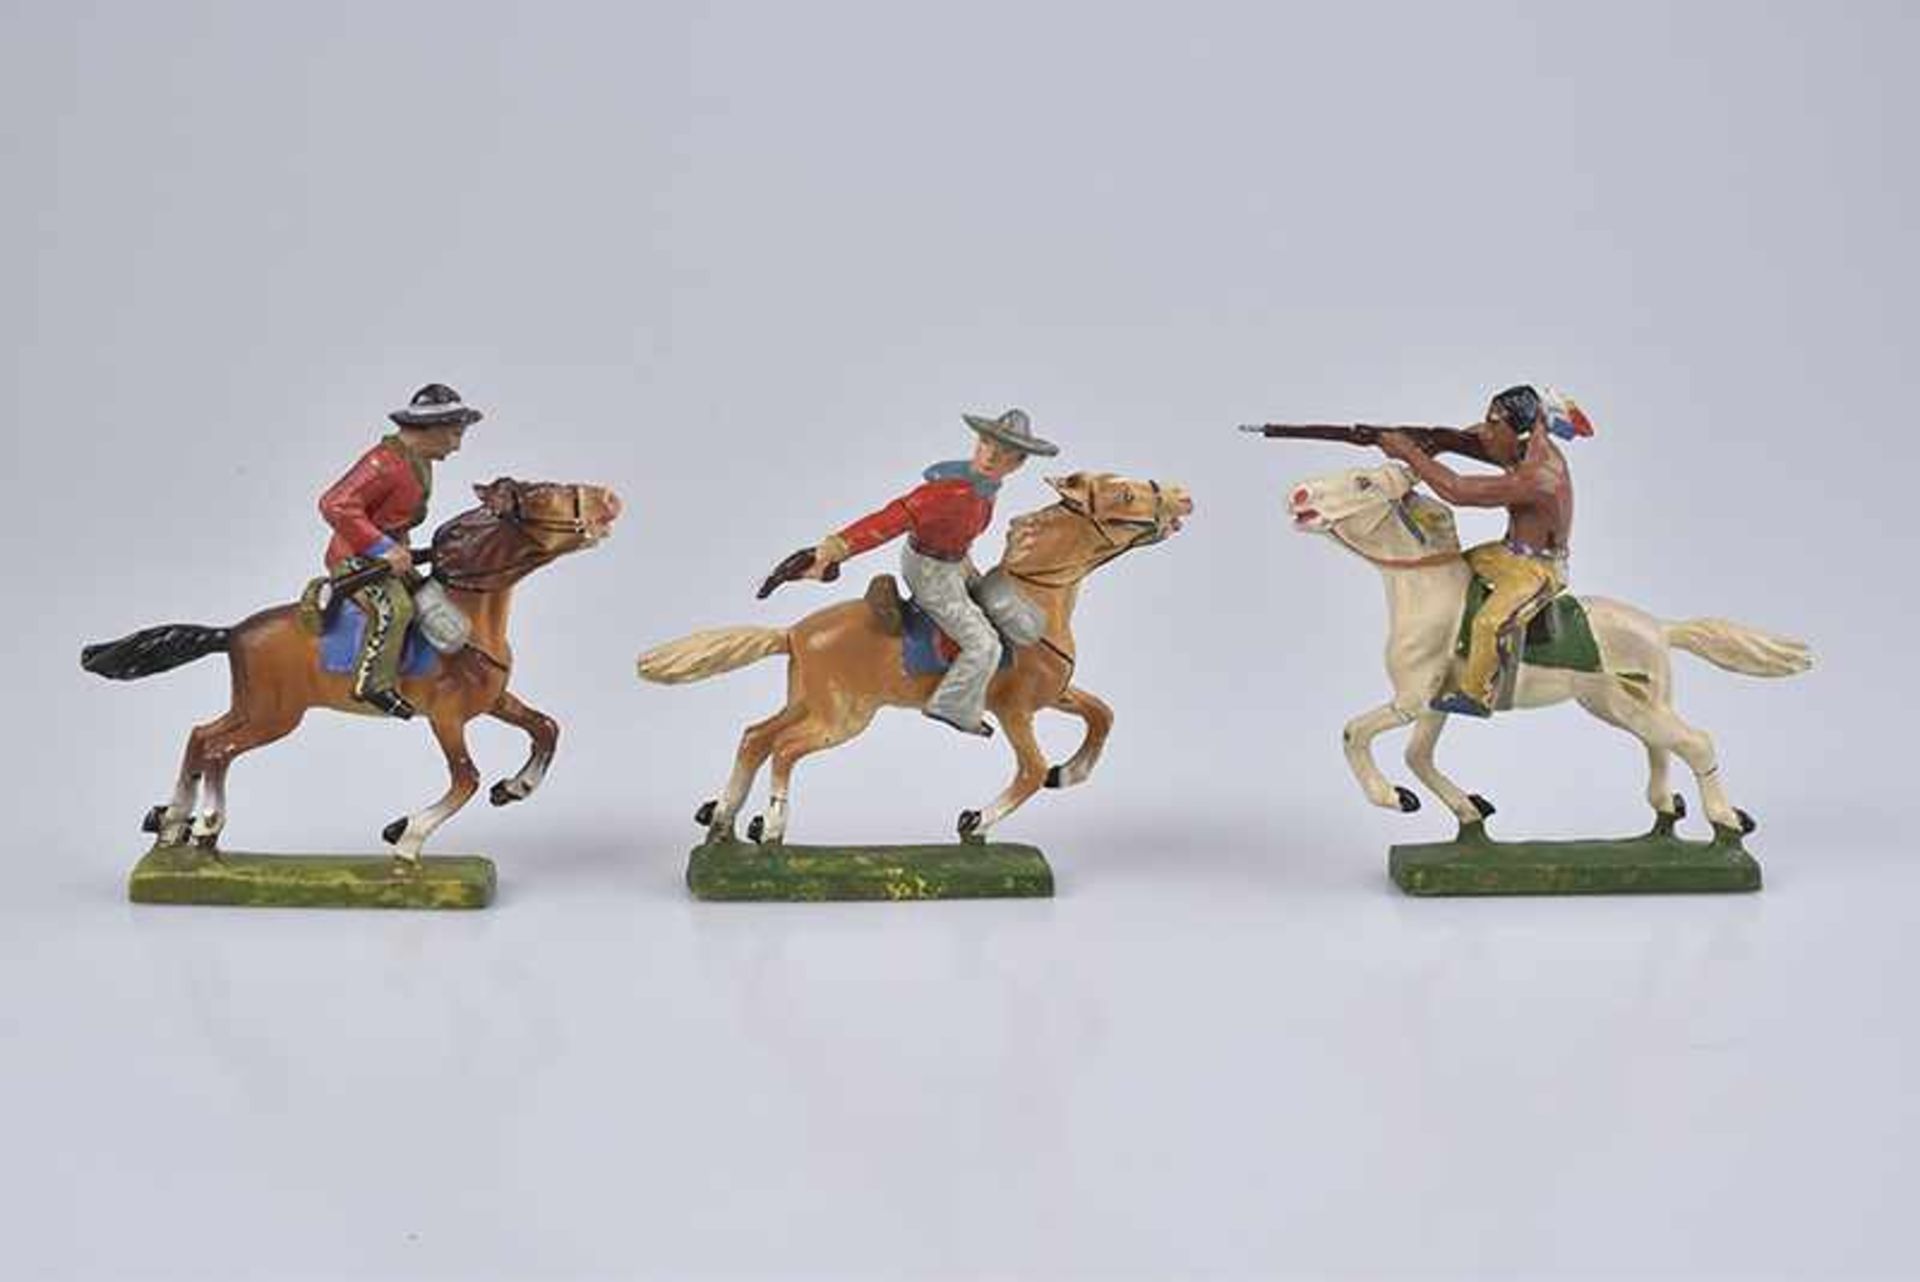 LINEOL 3 Wildwestfiguren zu Pferd, M.h., 7 cm, 1 Indianer, 2 Cowboys, leichte Masserisse, Z 1-2